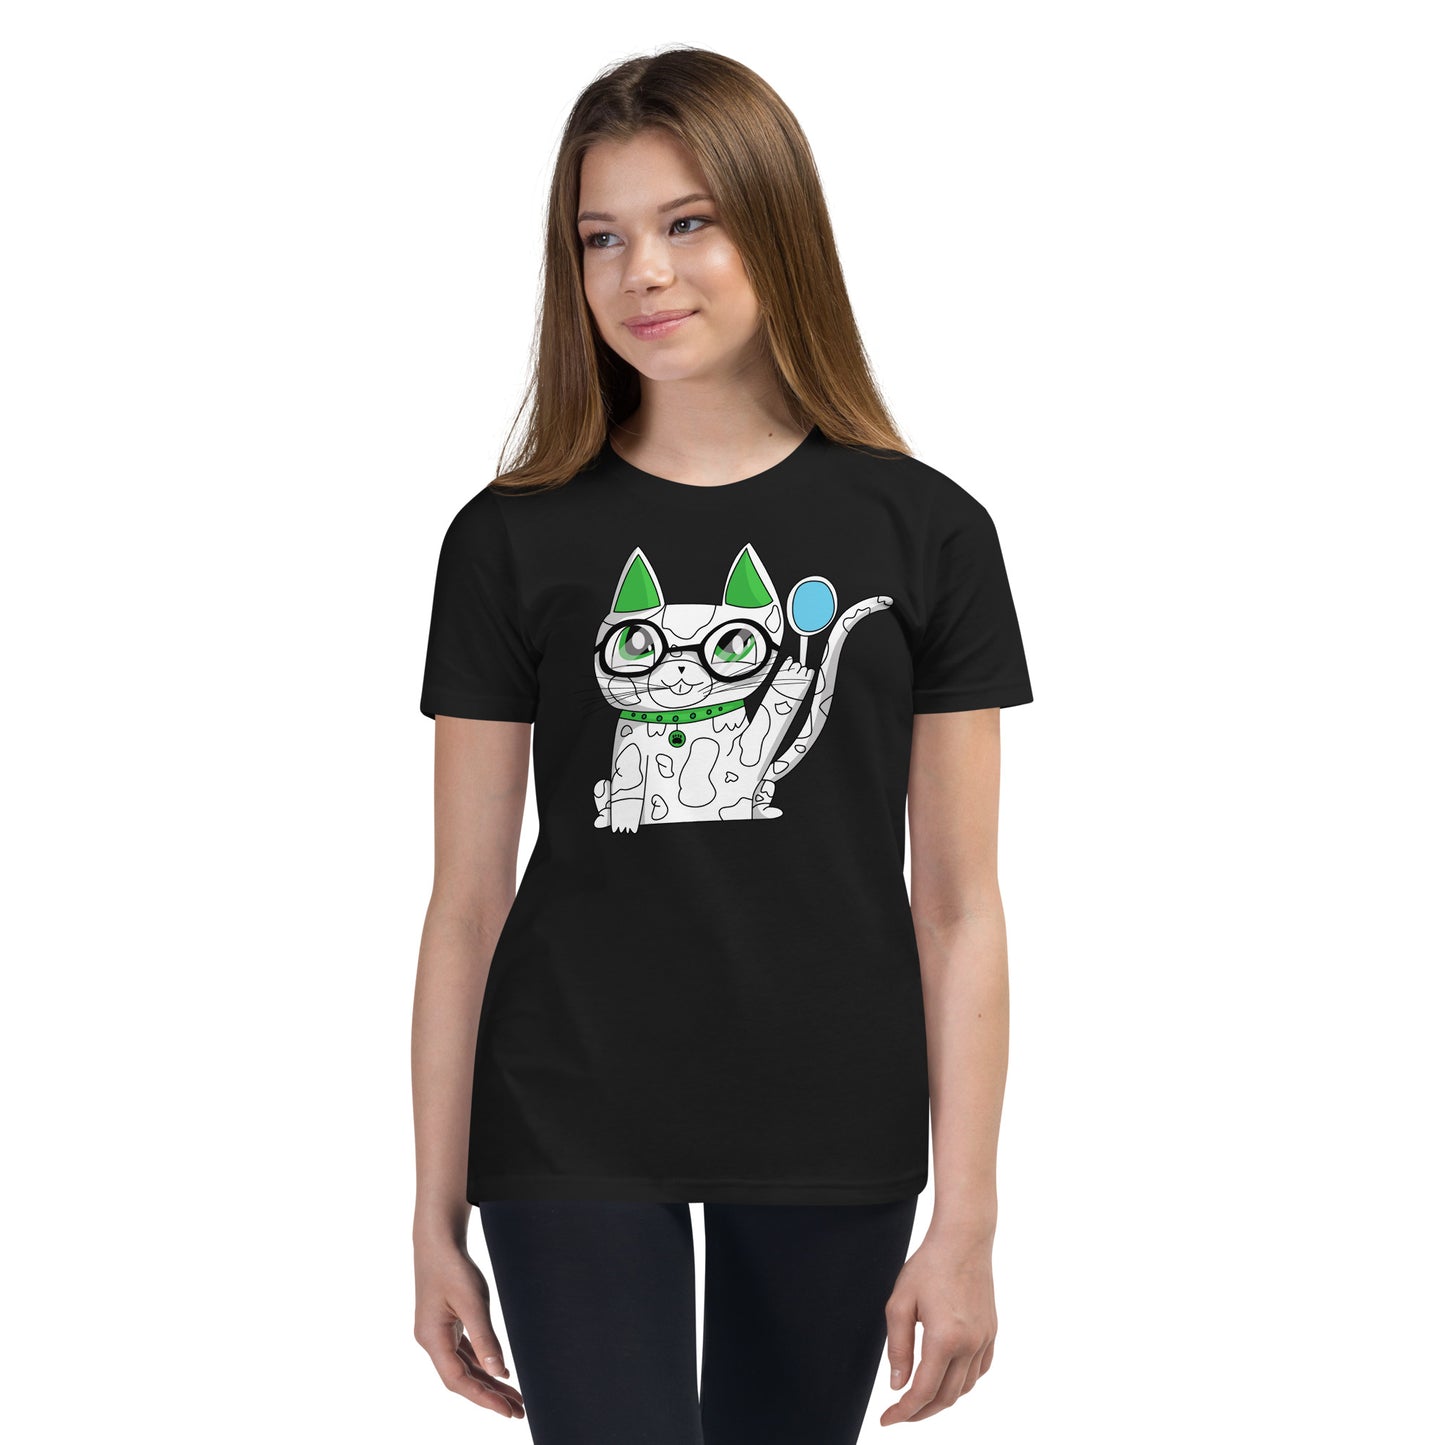 Curios Cat - Ami's Cats Youth Short Sleeve T-Shirt